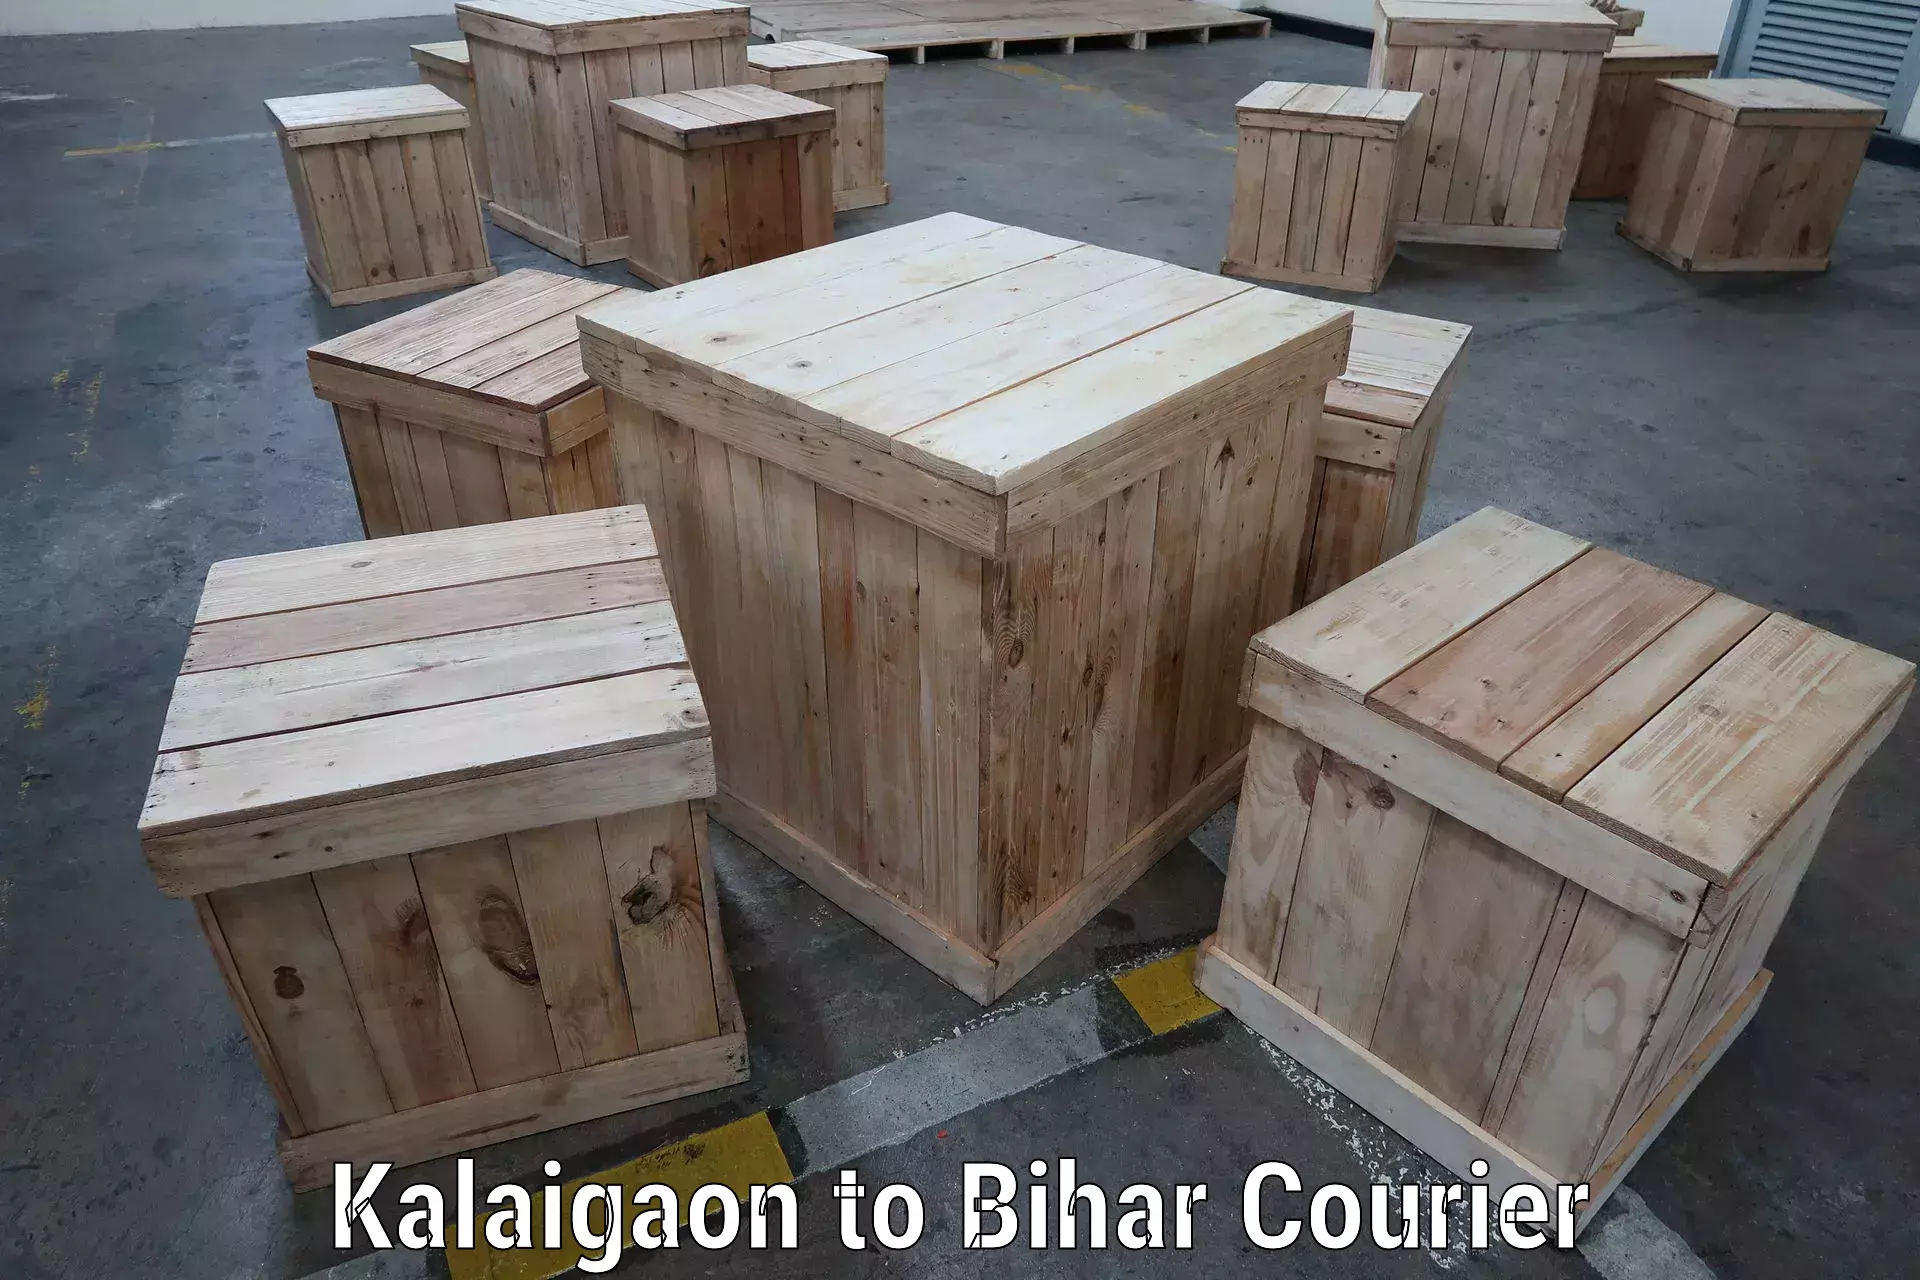 High-capacity shipping options Kalaigaon to Baniapur